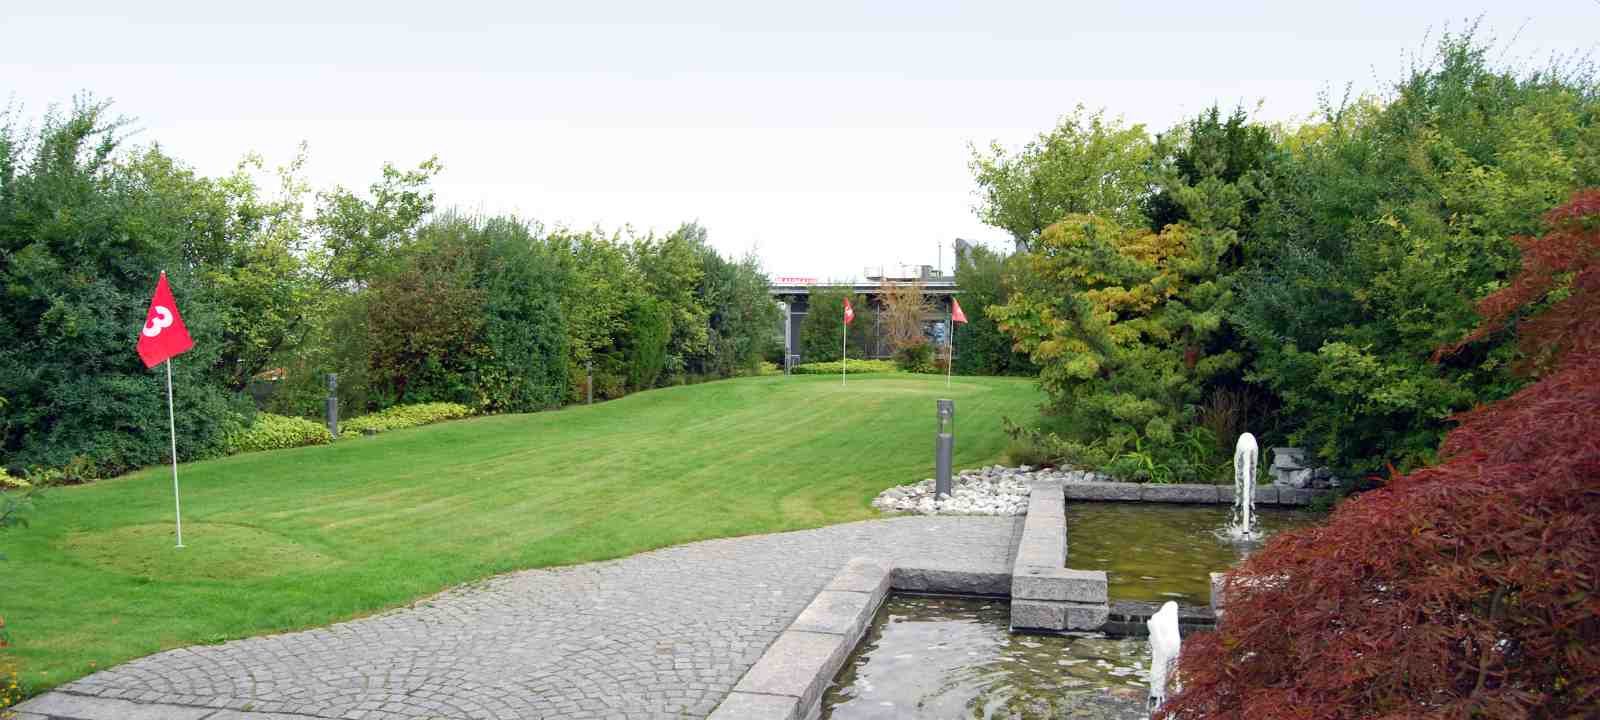 Dachgarten mit Golfplatz und Springbrunnen